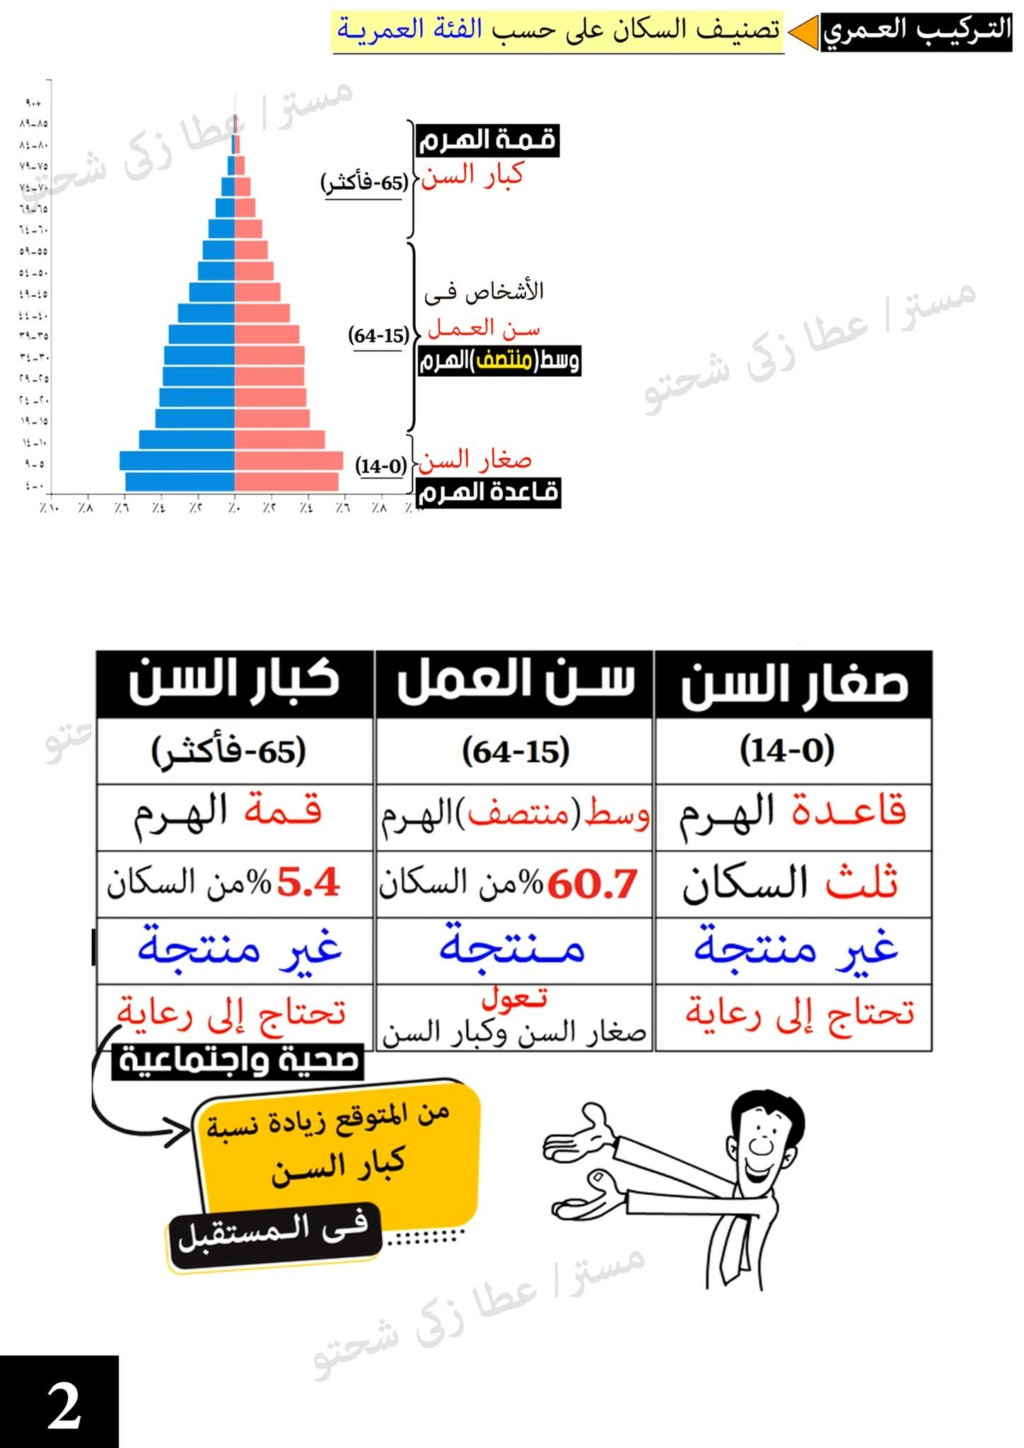 الهرم السكاني في مصر دراسات خامسة ابتدائي مستر عطا زكي شحتو 2445